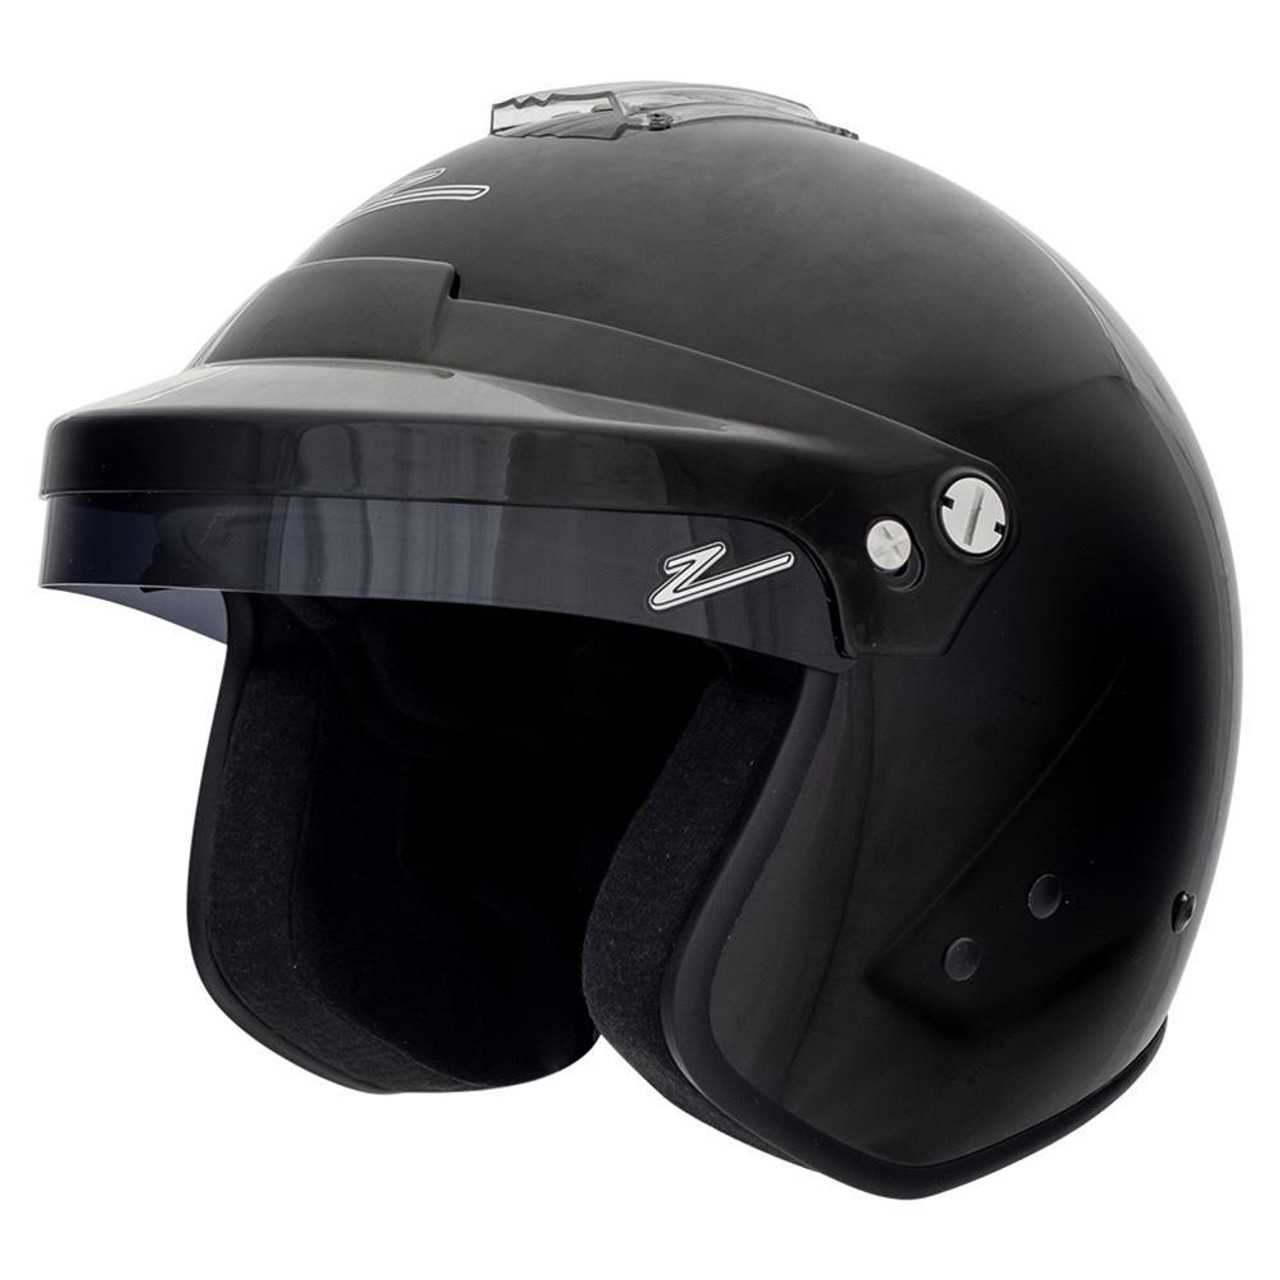 Zamp Helmet RZ-18H L Gloss Black SA2020 - ZAMH774003L